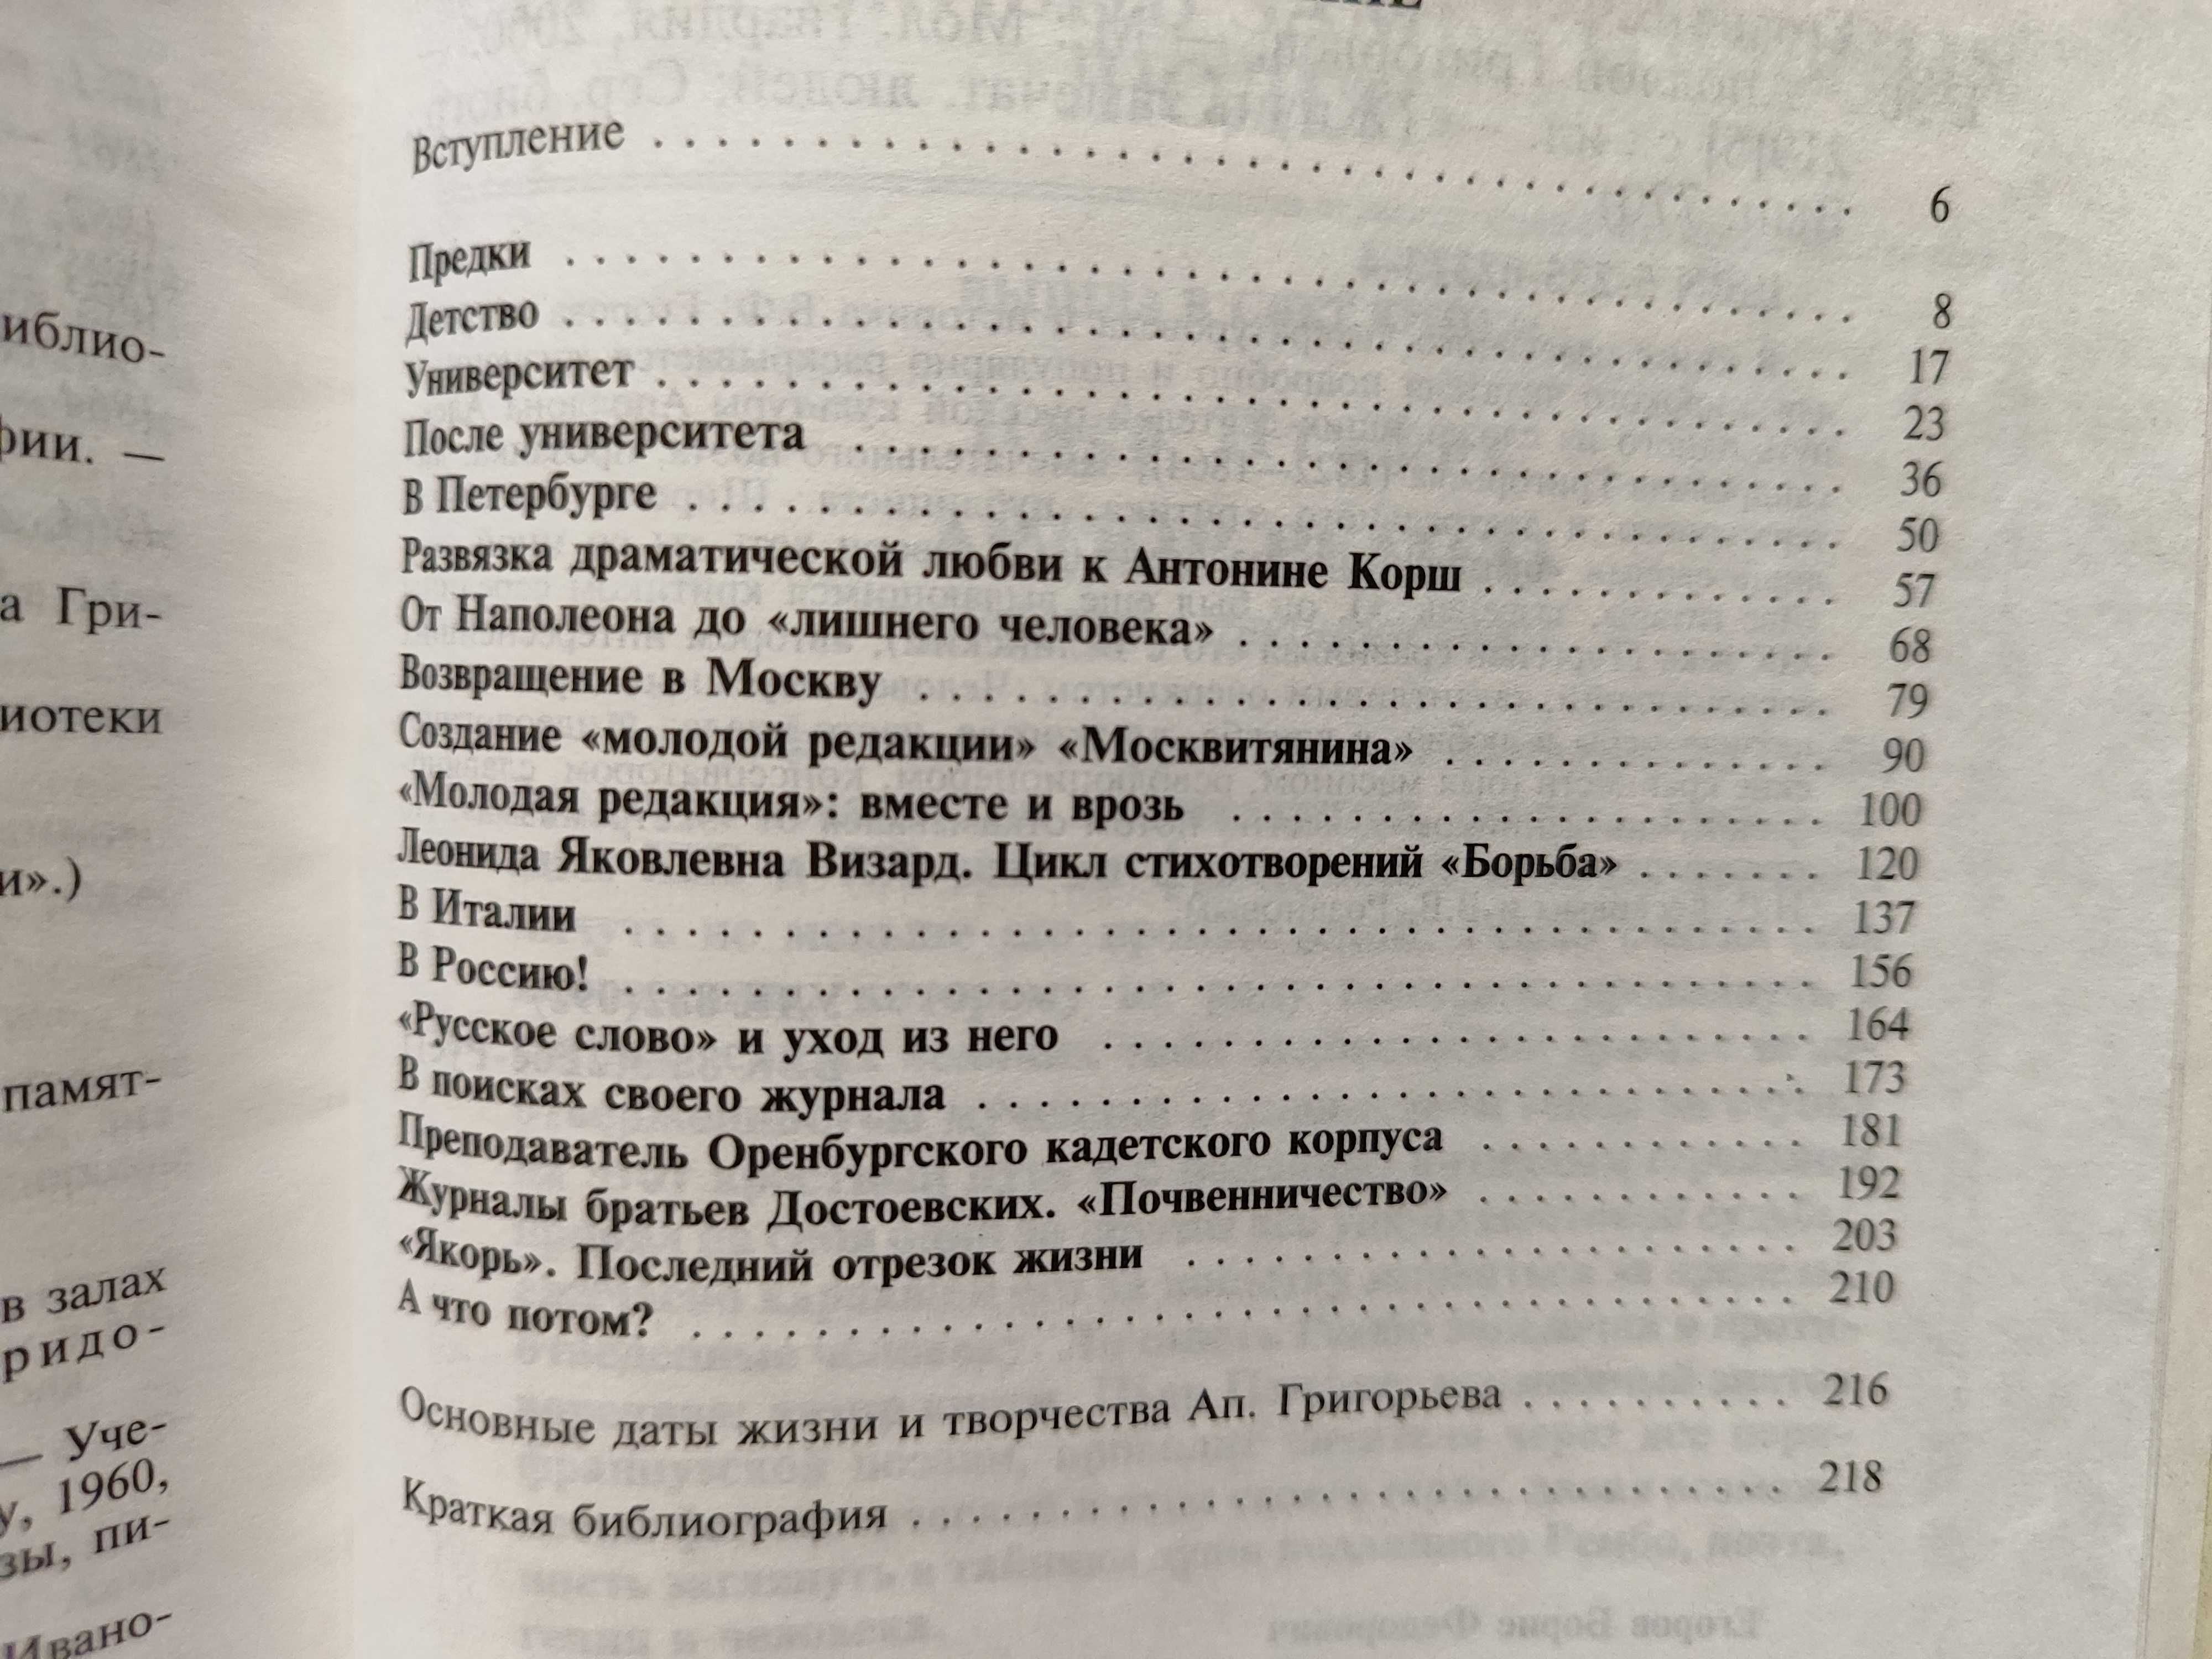 Аполлон-Григорьев. ЖЗЛ, новая серия.  2000. Биография, поэзия